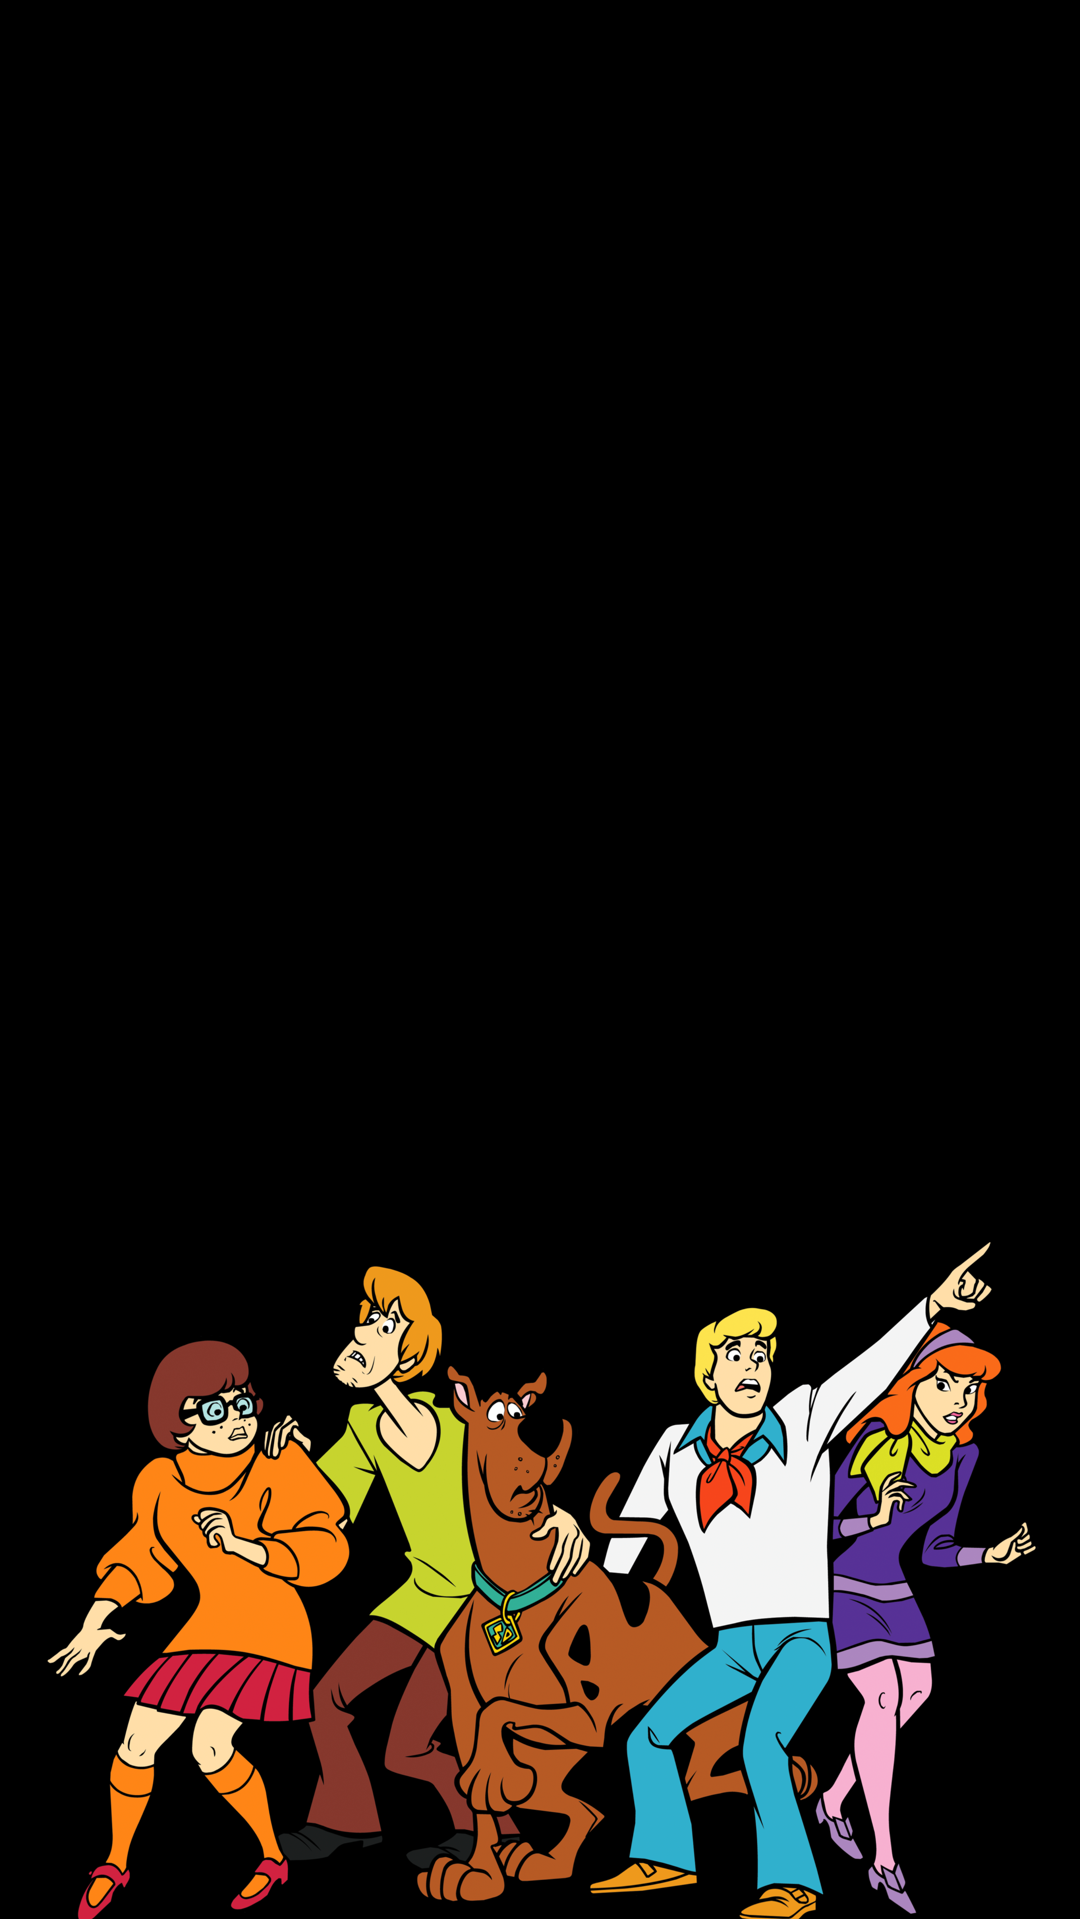 iPhone Wallpaper Scooby Doo Pictures Image Cartoon